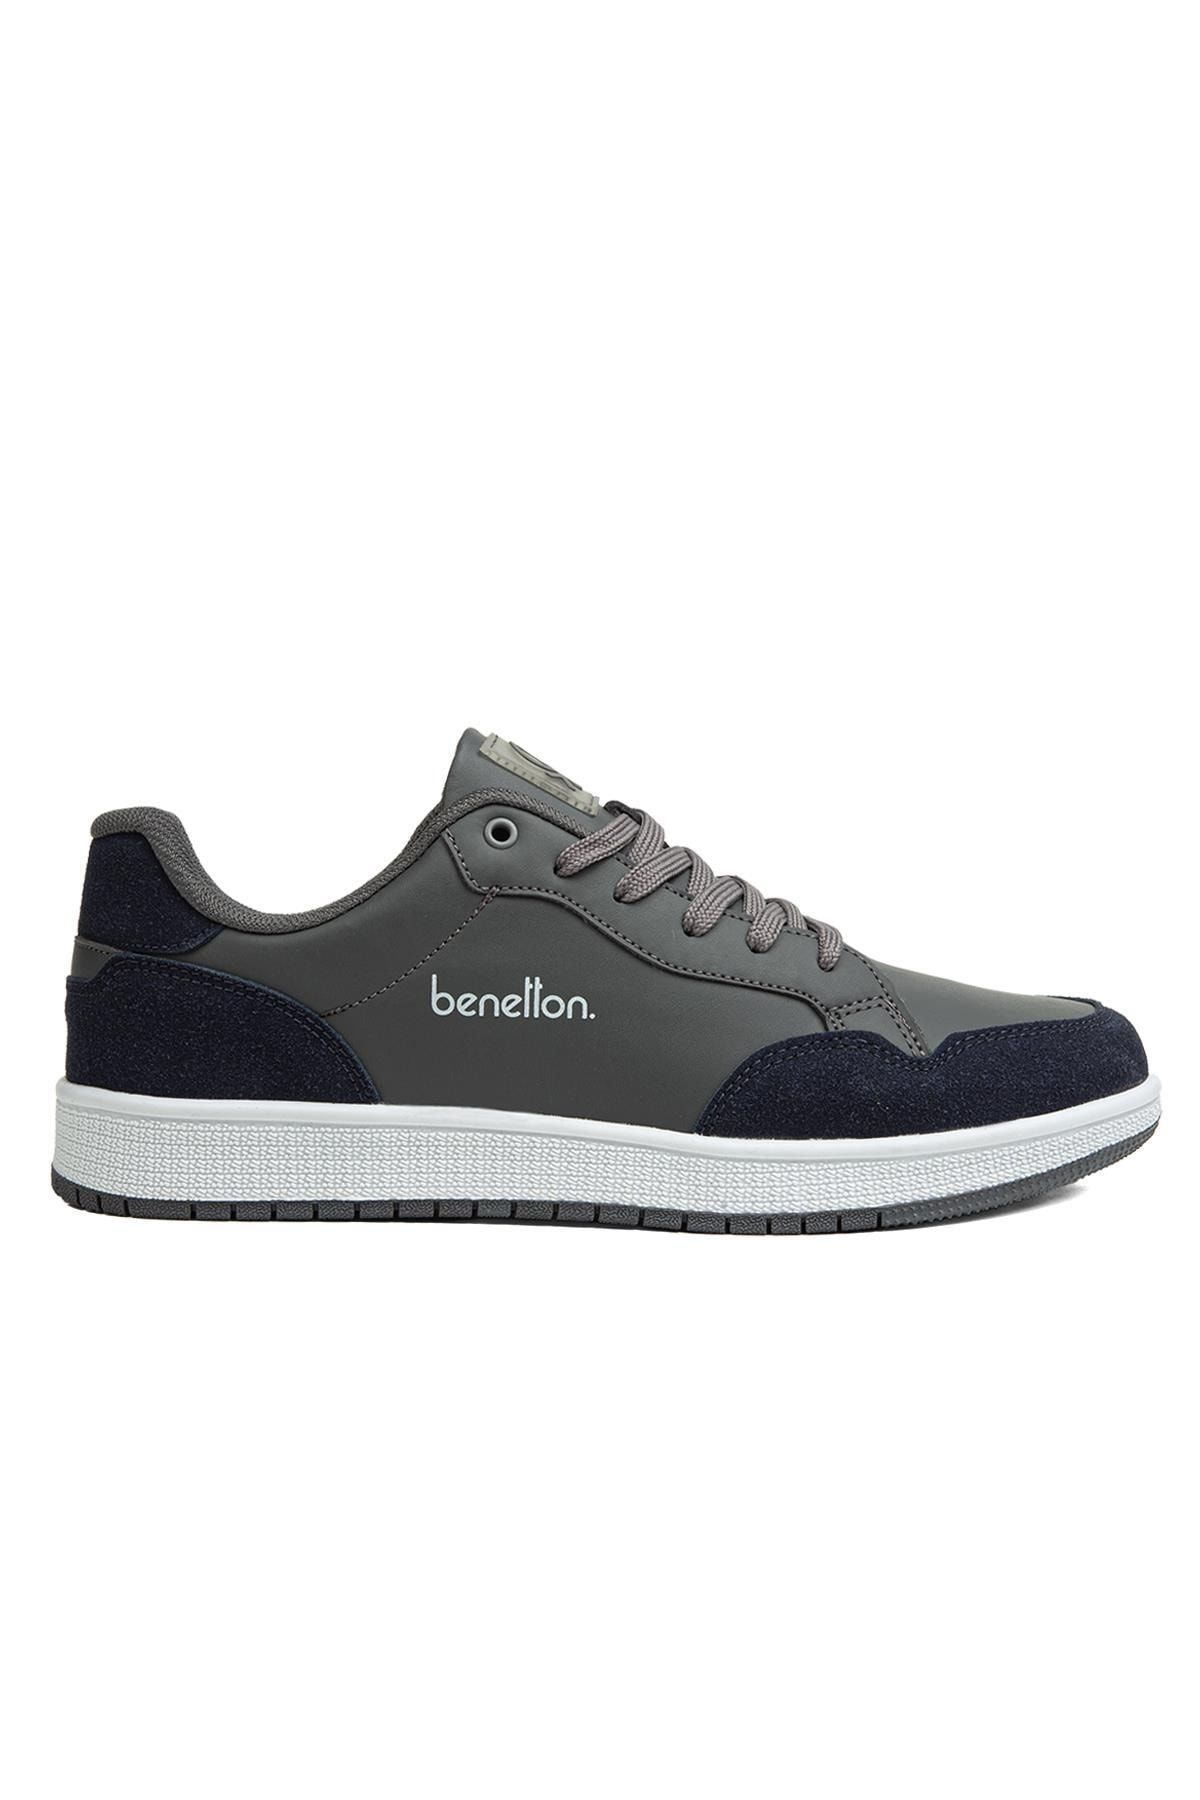 Benetton ® | Bn-30871 - 3471 Fume - Erkek Spor Ayakkabı